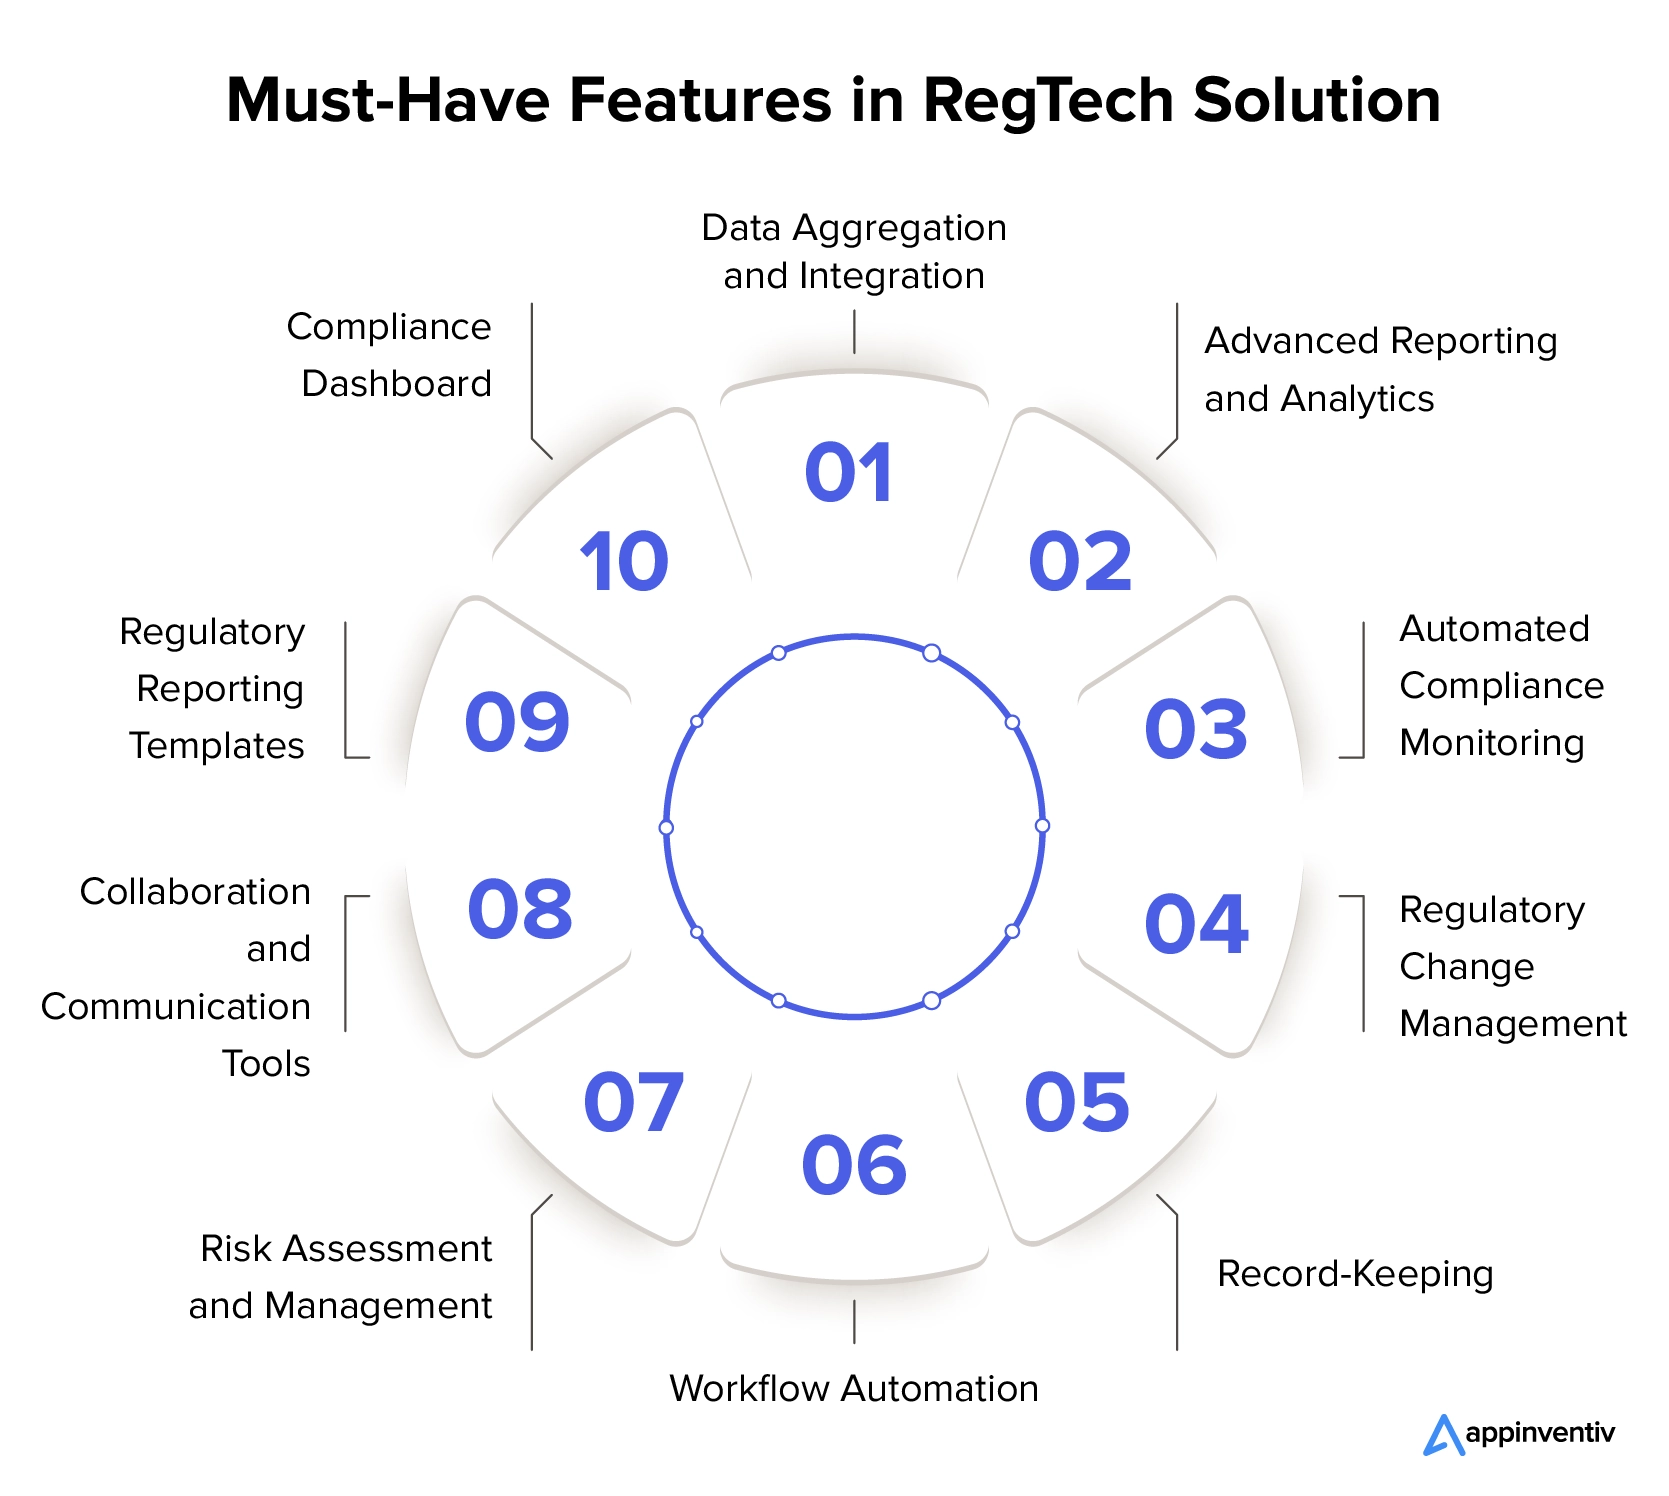 Wichtige Funktionen zur Implementierung in RegTech-Lösungen